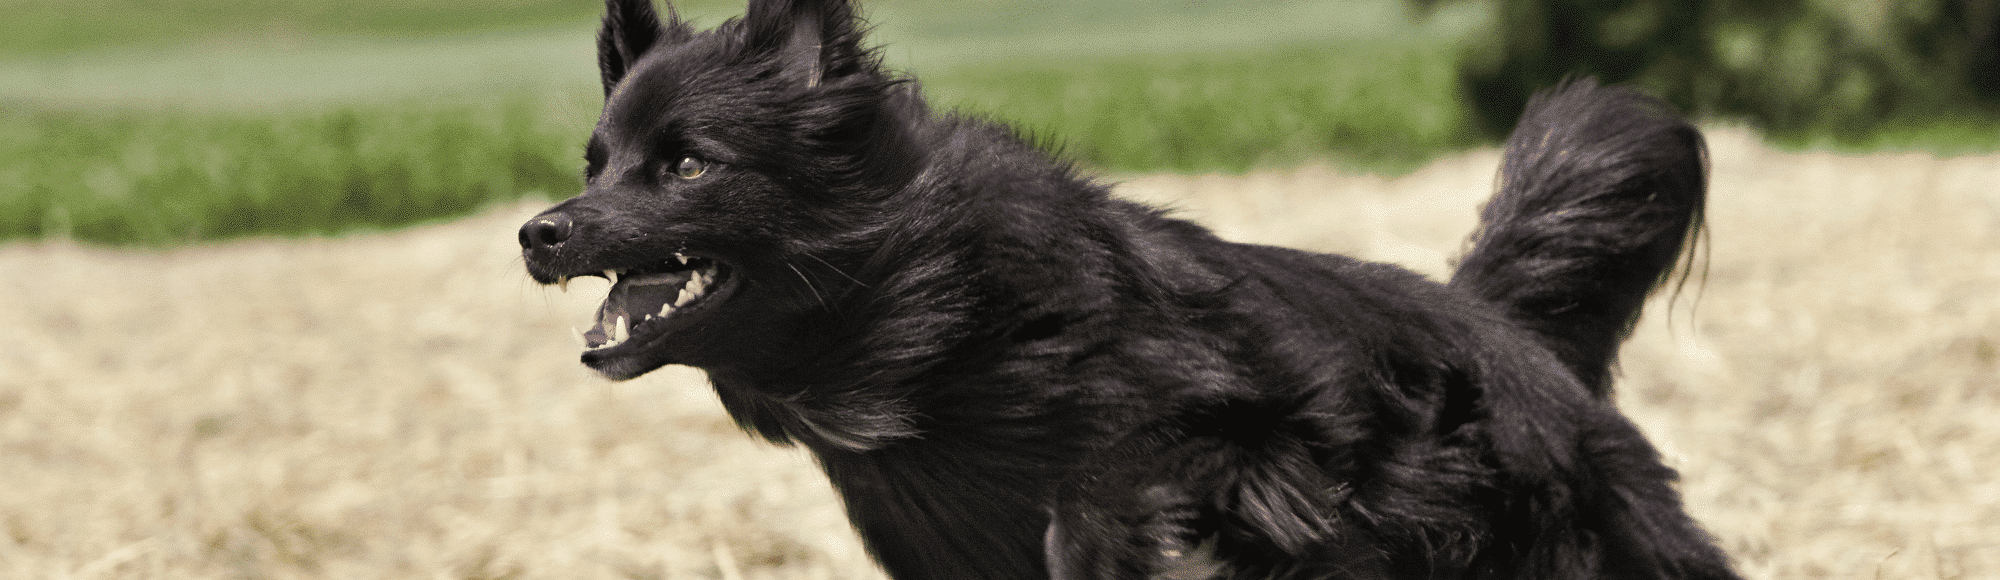 Ein schwarzer Hund rennt über ein Feld